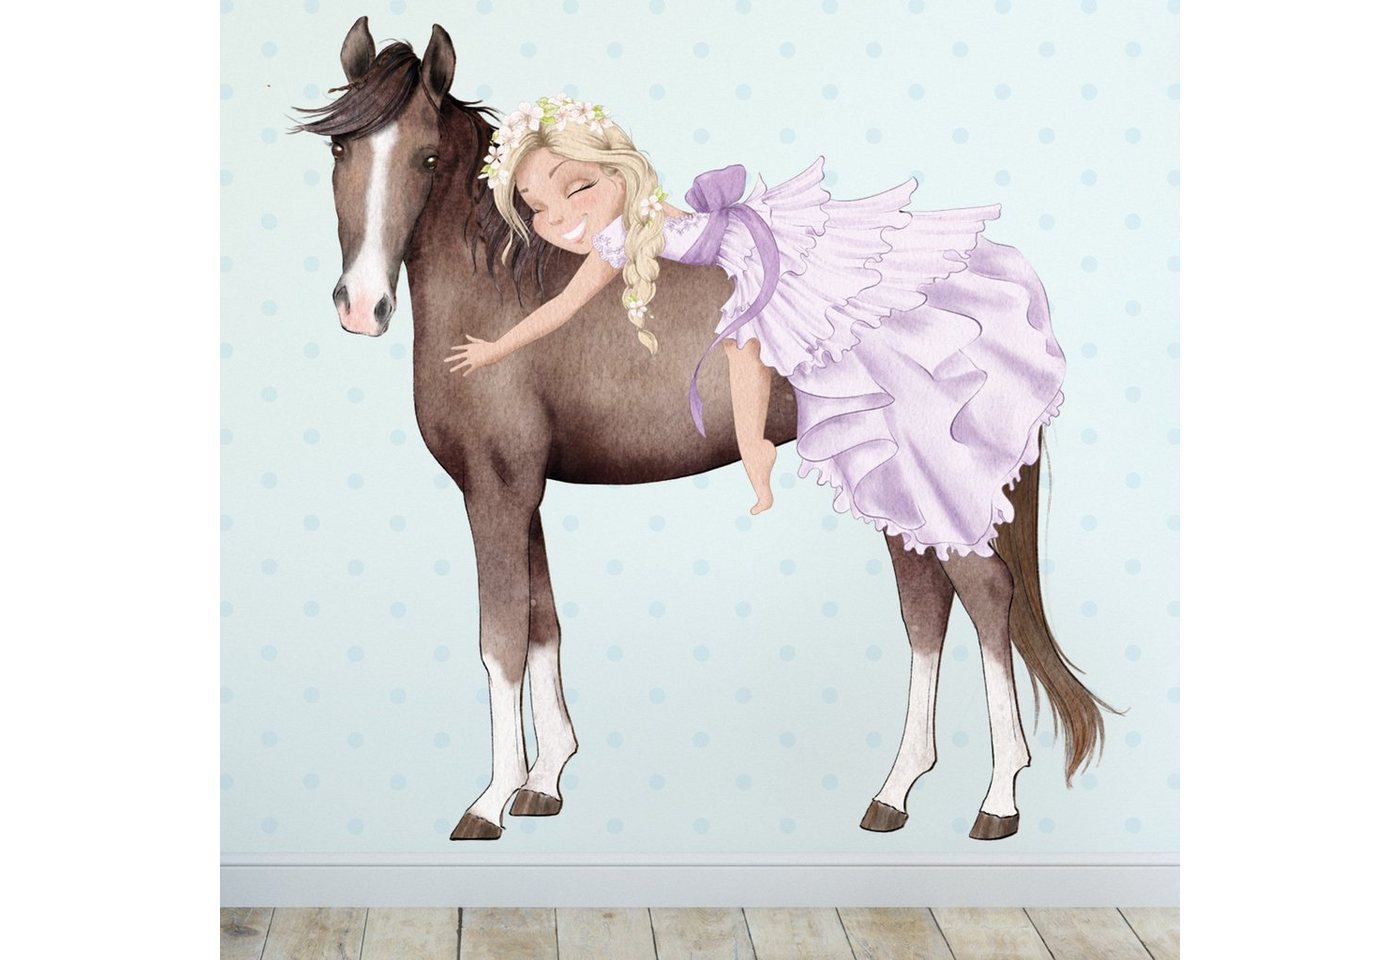 Sunnywall Wandtattoo Prinzessin Mädchen auf Pferd, Wandaufkleber Kinderzimmer, Pferde, selbstklebend, rückstandslos entfernbar von Sunnywall